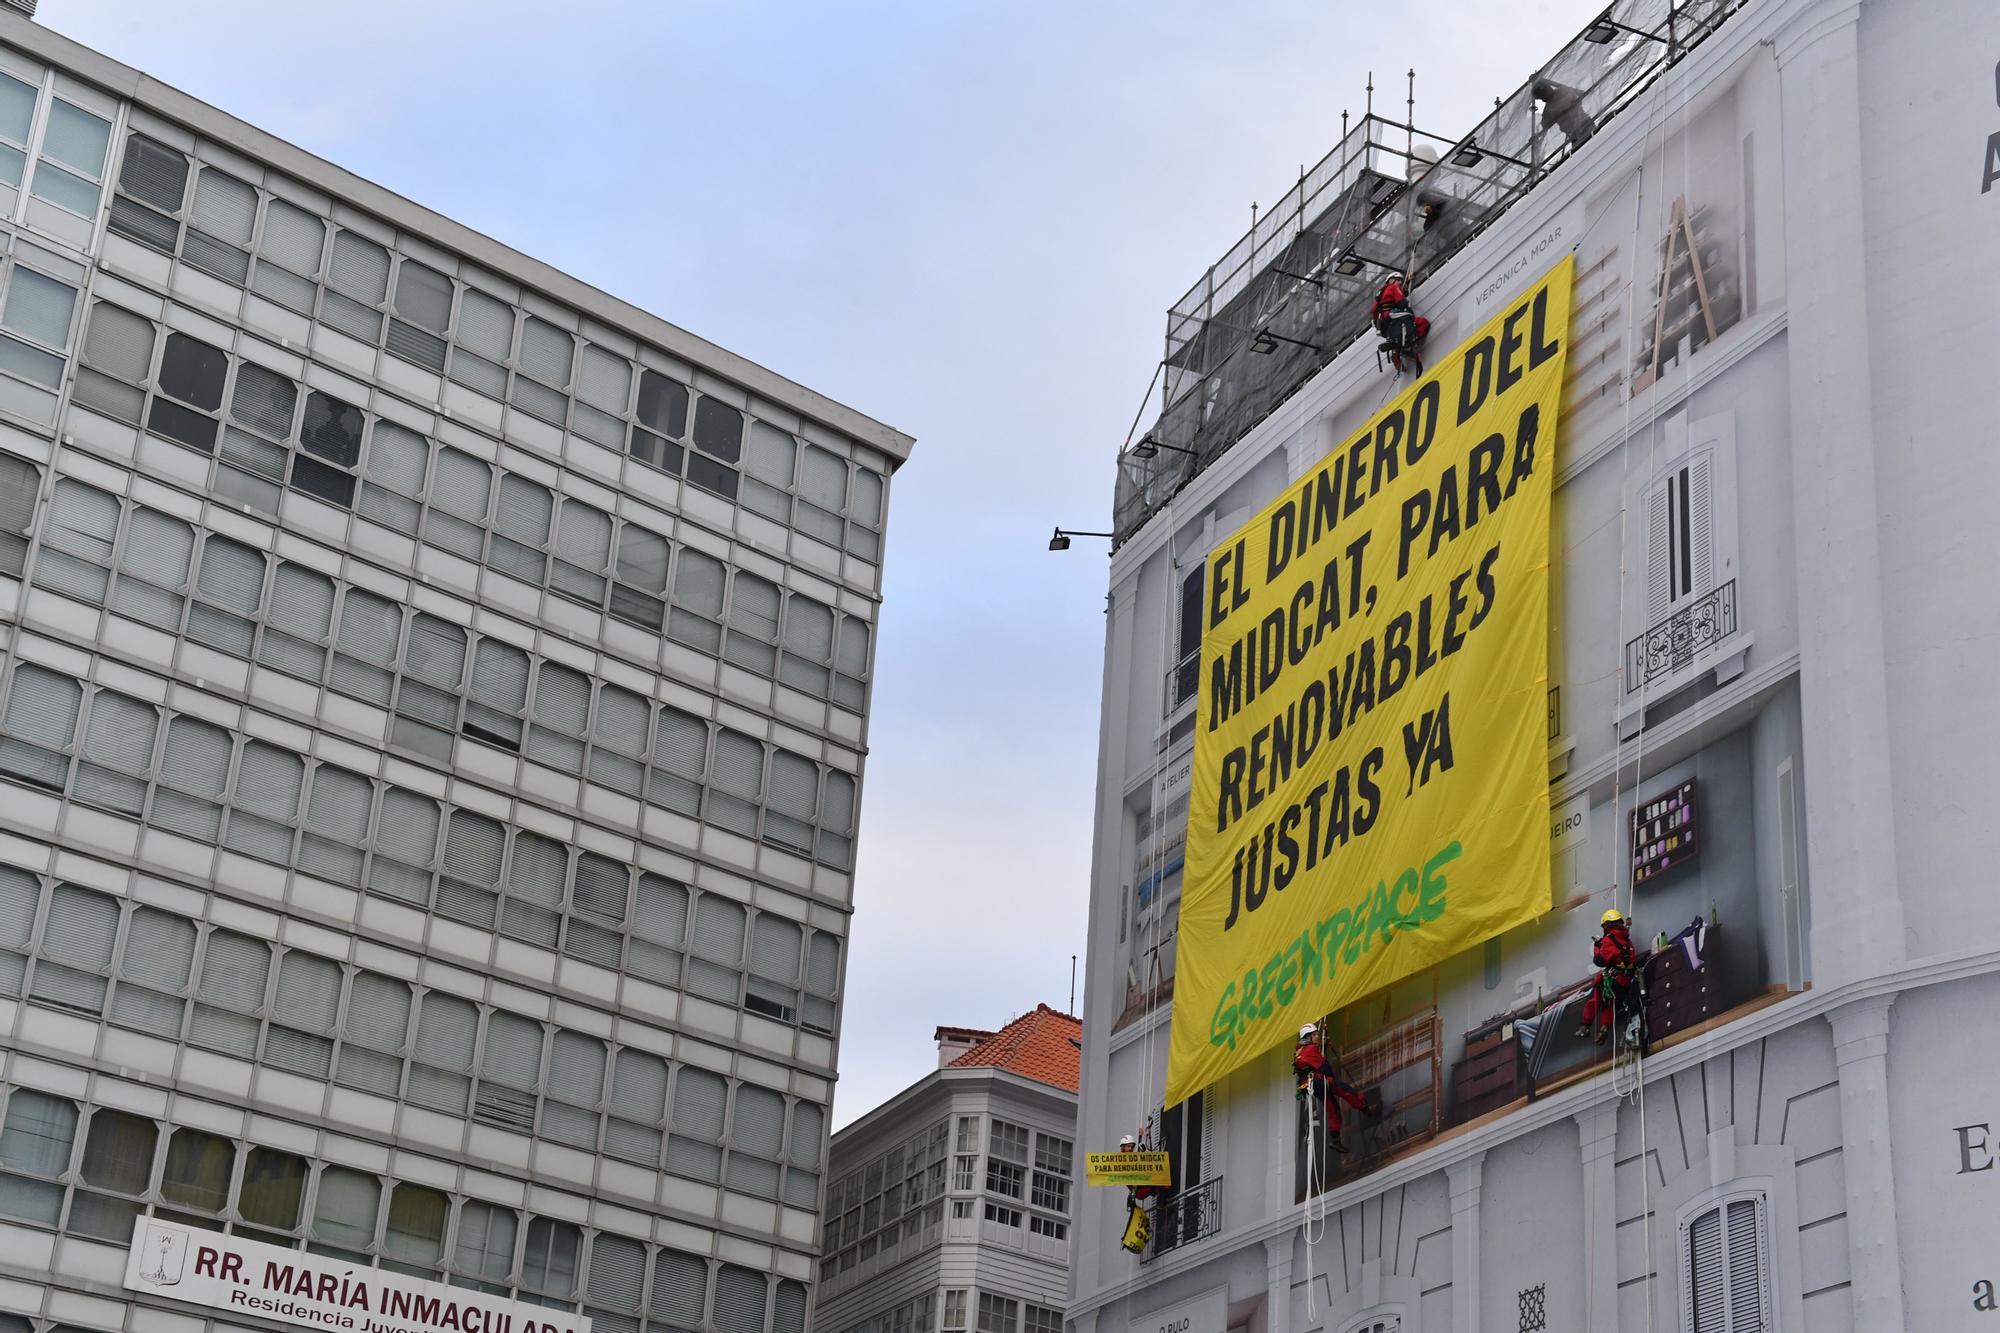 Mensaje de Greenpeace para Pedro Sánchez y Olaf Scholz desde la Casa Molina de A Coruña